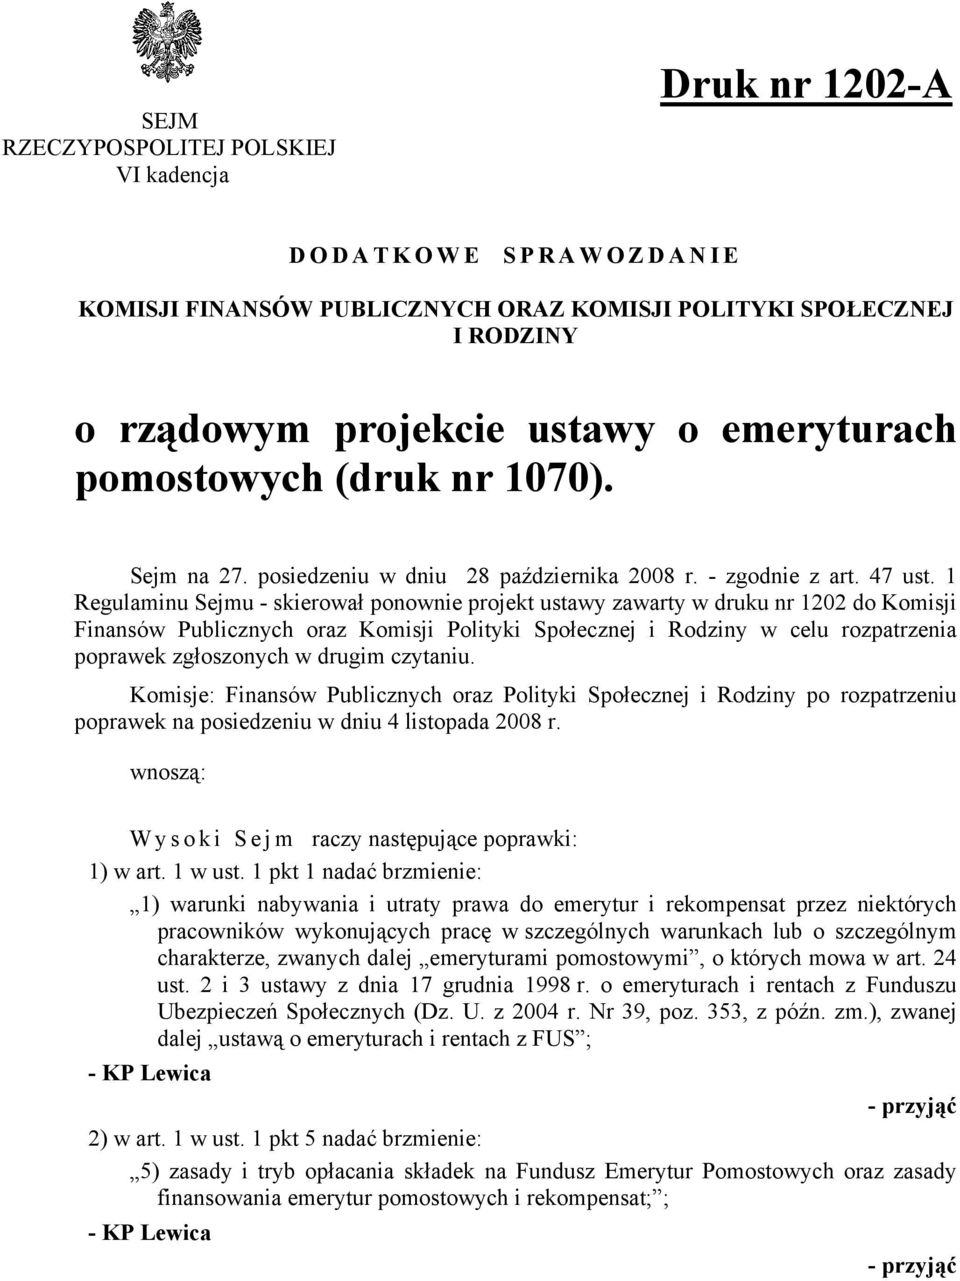 1 Regulaminu Sejmu - skierował ponownie projekt ustawy zawarty w druku nr 1202 do Komisji Finansów Publicznych oraz Komisji Polityki Społecznej i Rodziny w celu rozpatrzenia poprawek zgłoszonych w